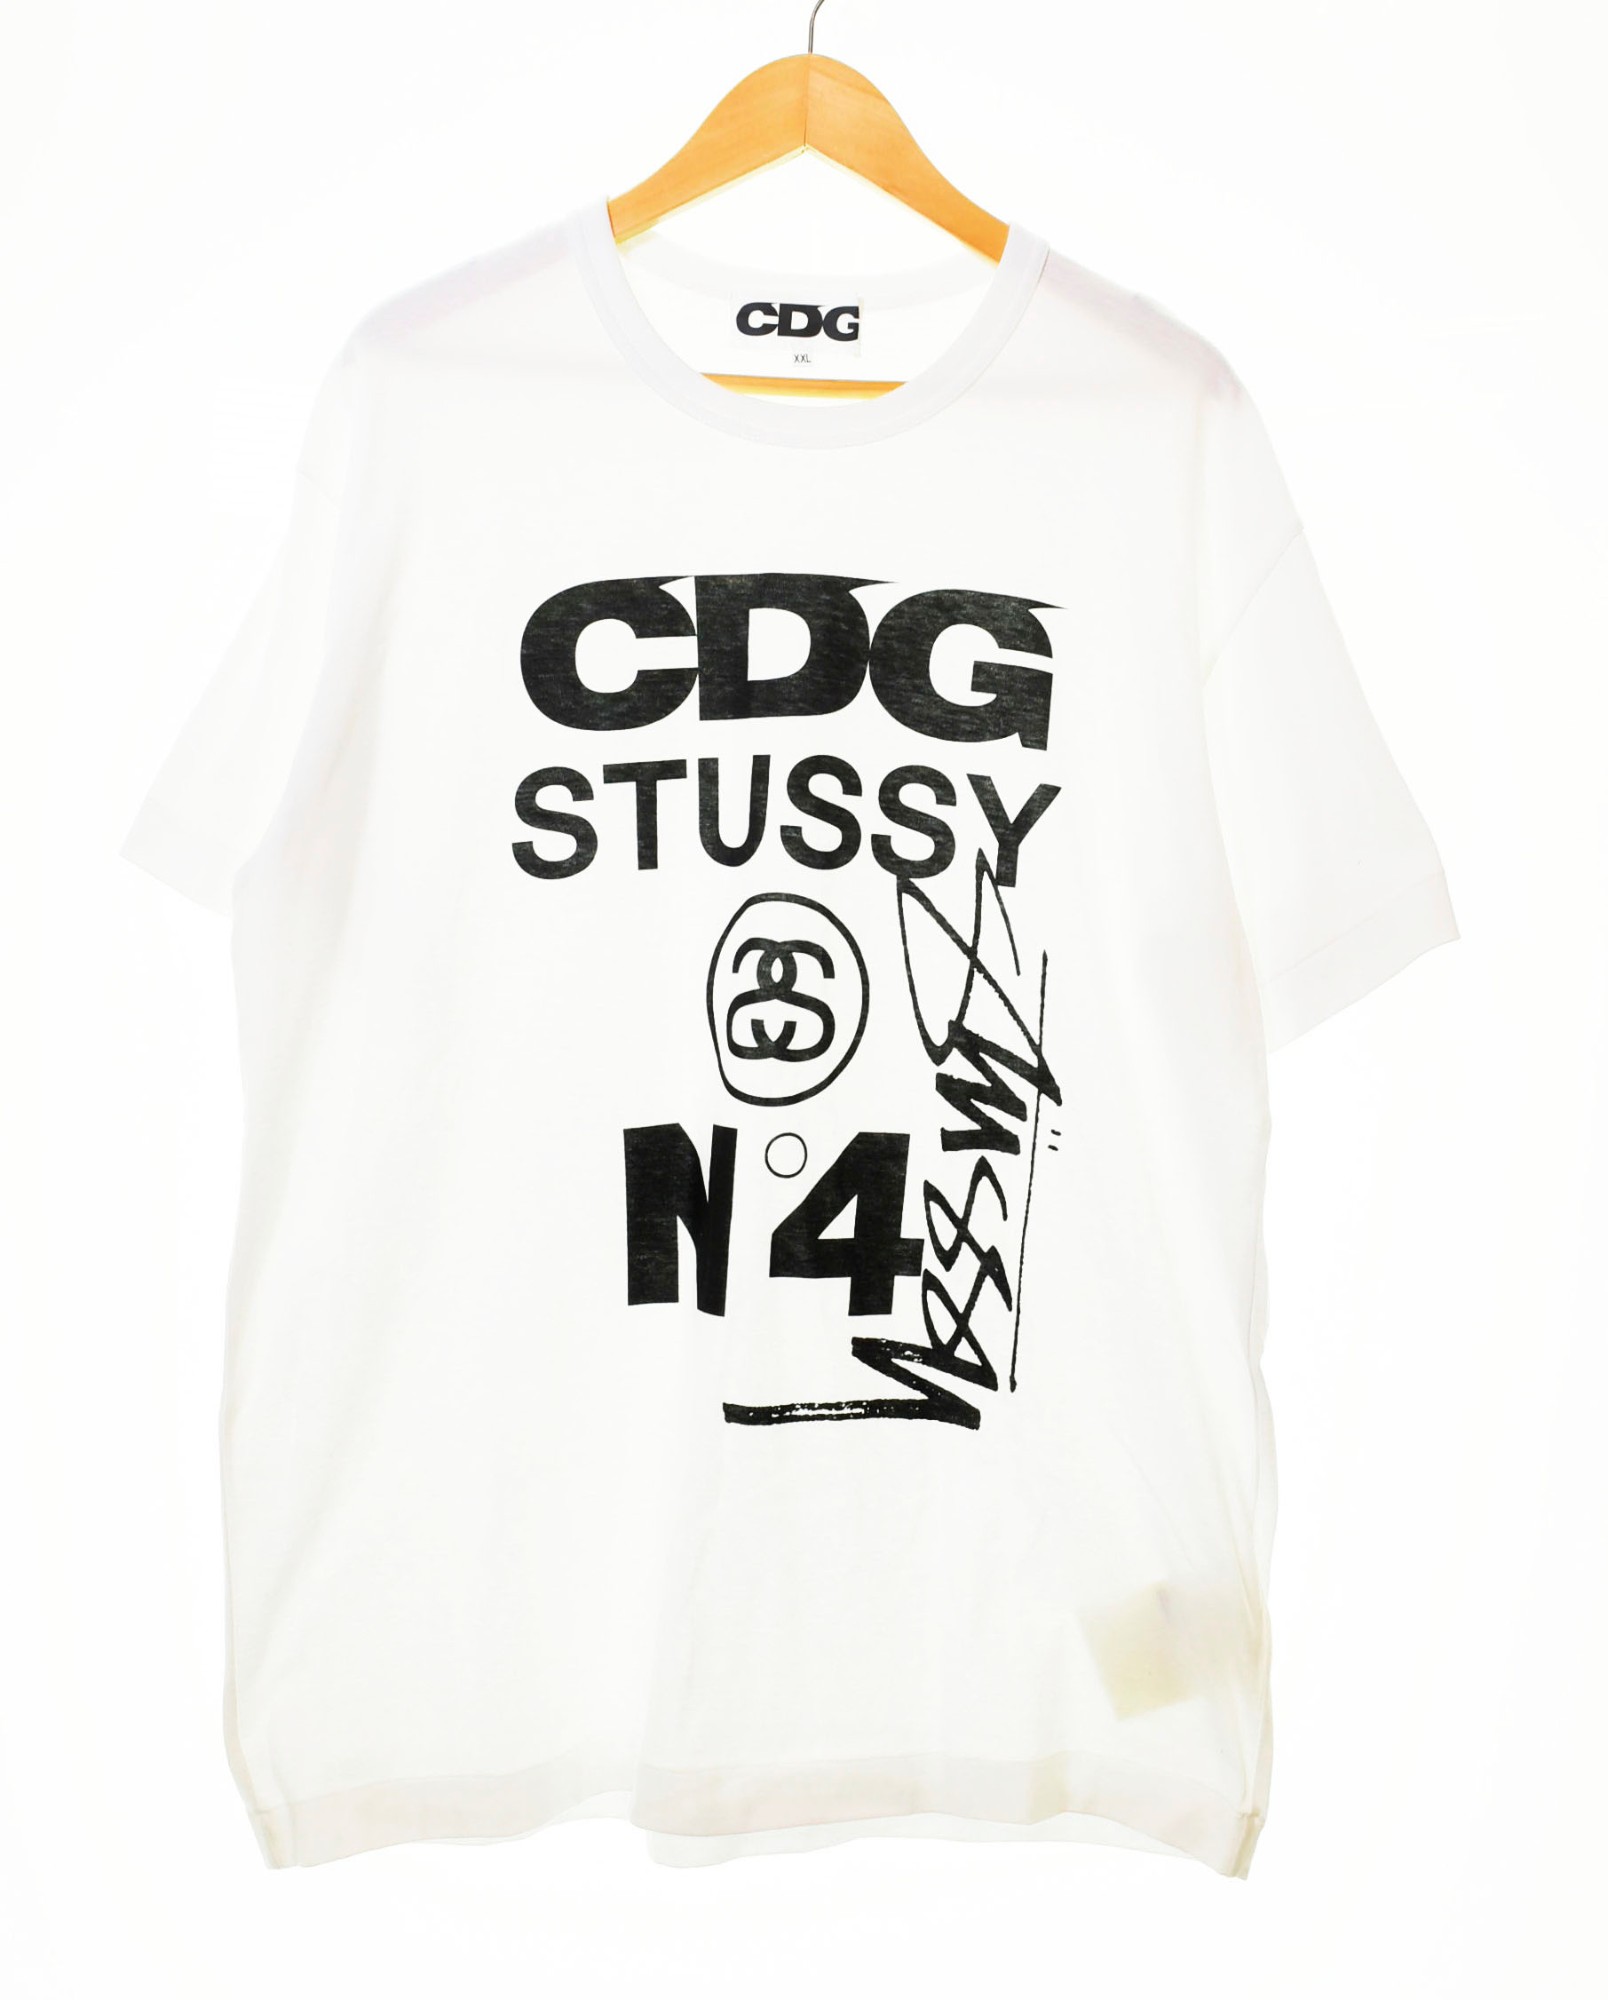 【中古】コムデギャルソン COMME des GARCONS CDGx STUSSY TEE コムデギャルソン シーディージー×ステューシー Tシャツ SH-T002 Tシャツ ロゴ ホワイト LLサイズ 103MT-228